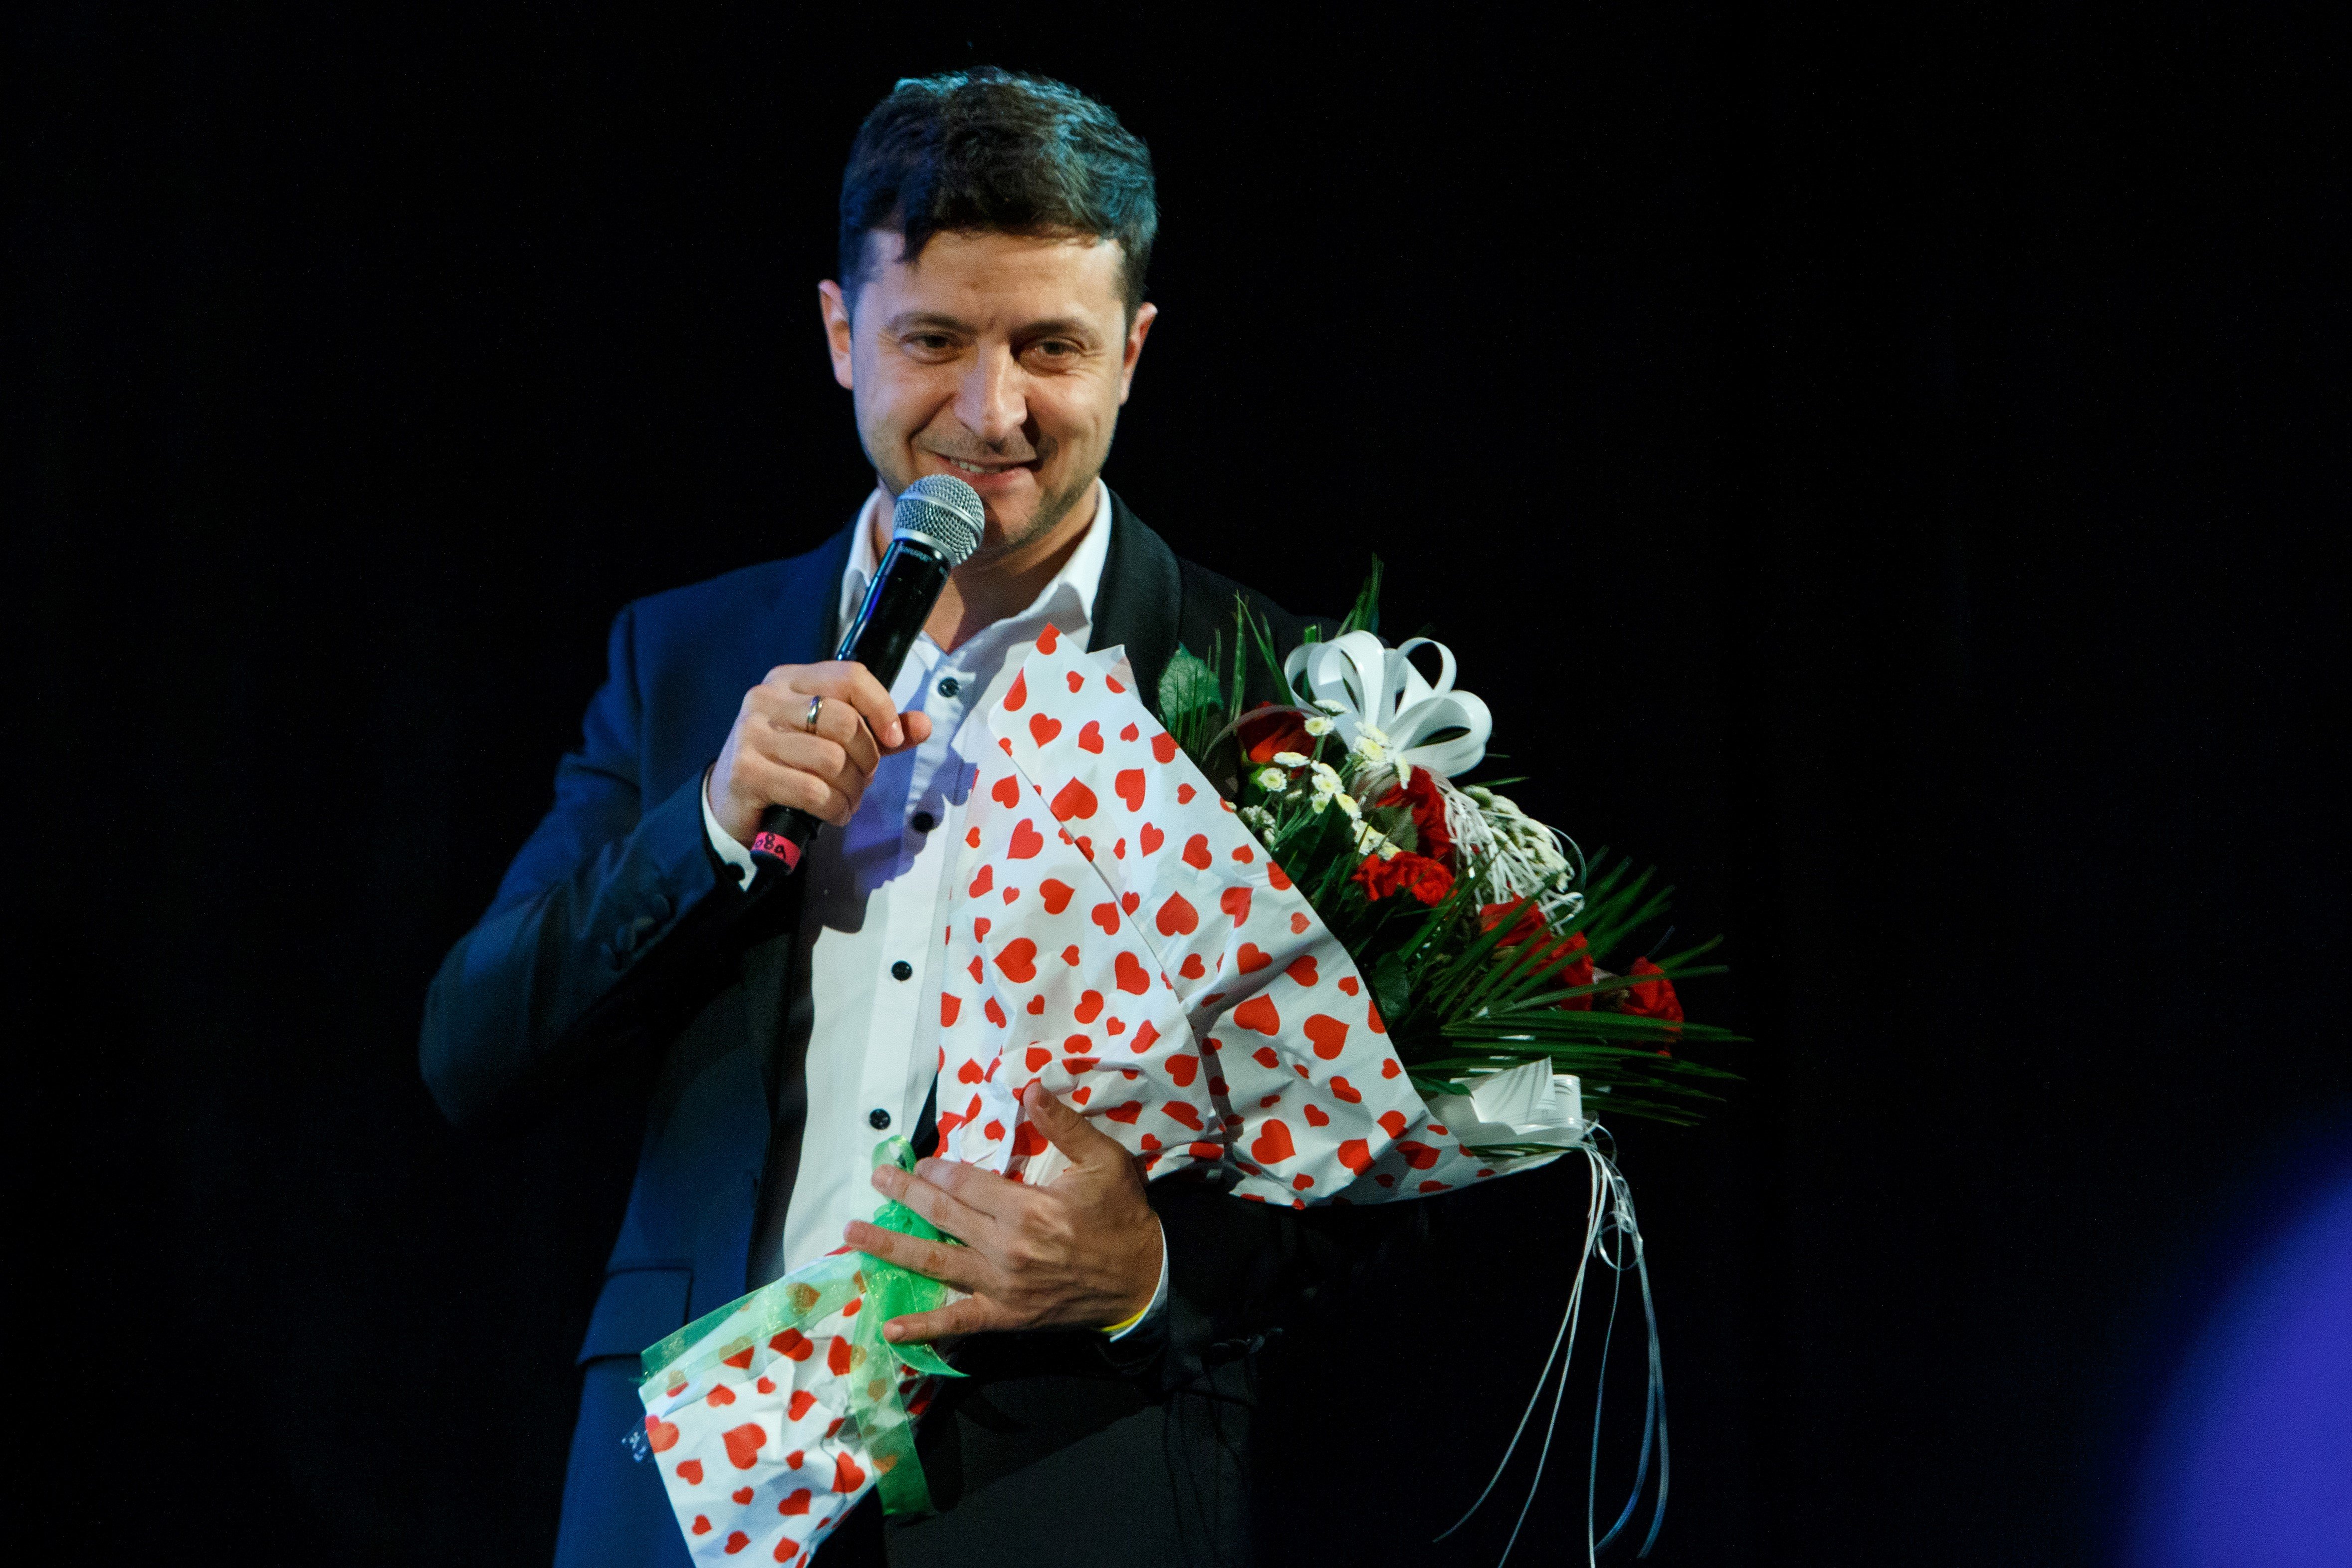 Der ukrainische Präsidentschaftskandidat Wolodymyr Selenskyj nach seinem Auftritt auf der Bühne in Uschhorod, Ukraine, am 9. Februar 2019. | Quelle: Getty Images